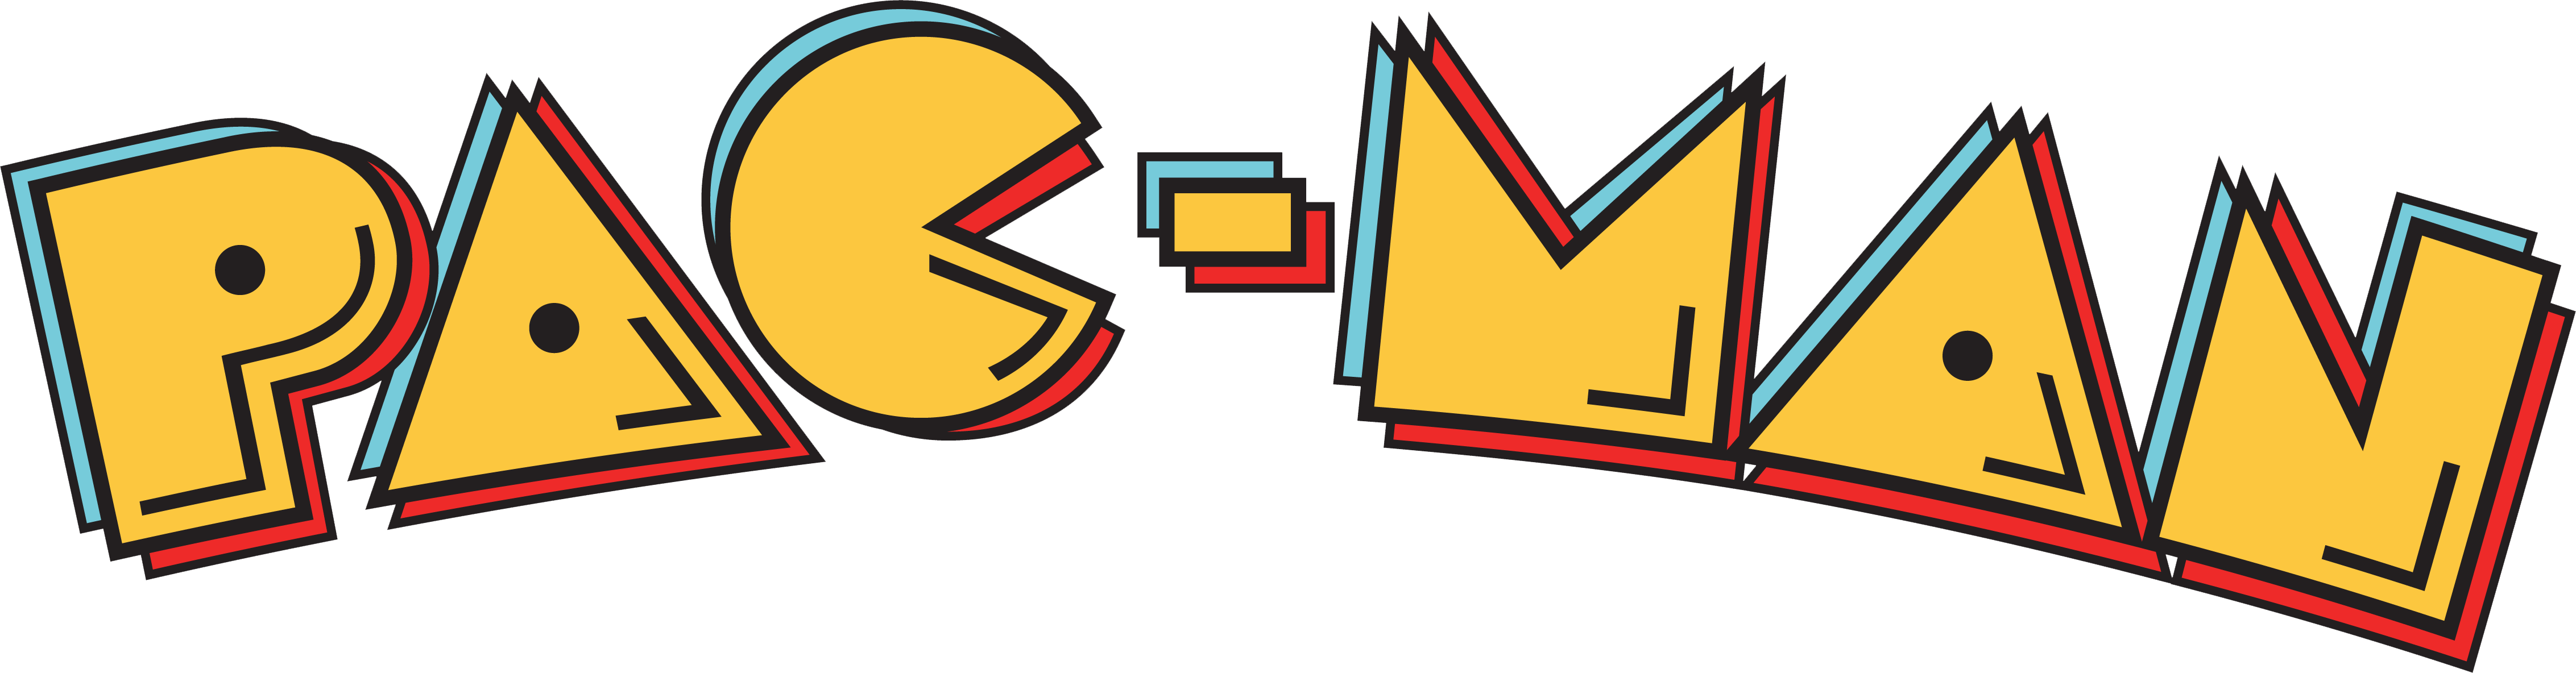 Pacman Logo - Pac-Man logo | Retro This and That | Logos, Fonts, Men logo